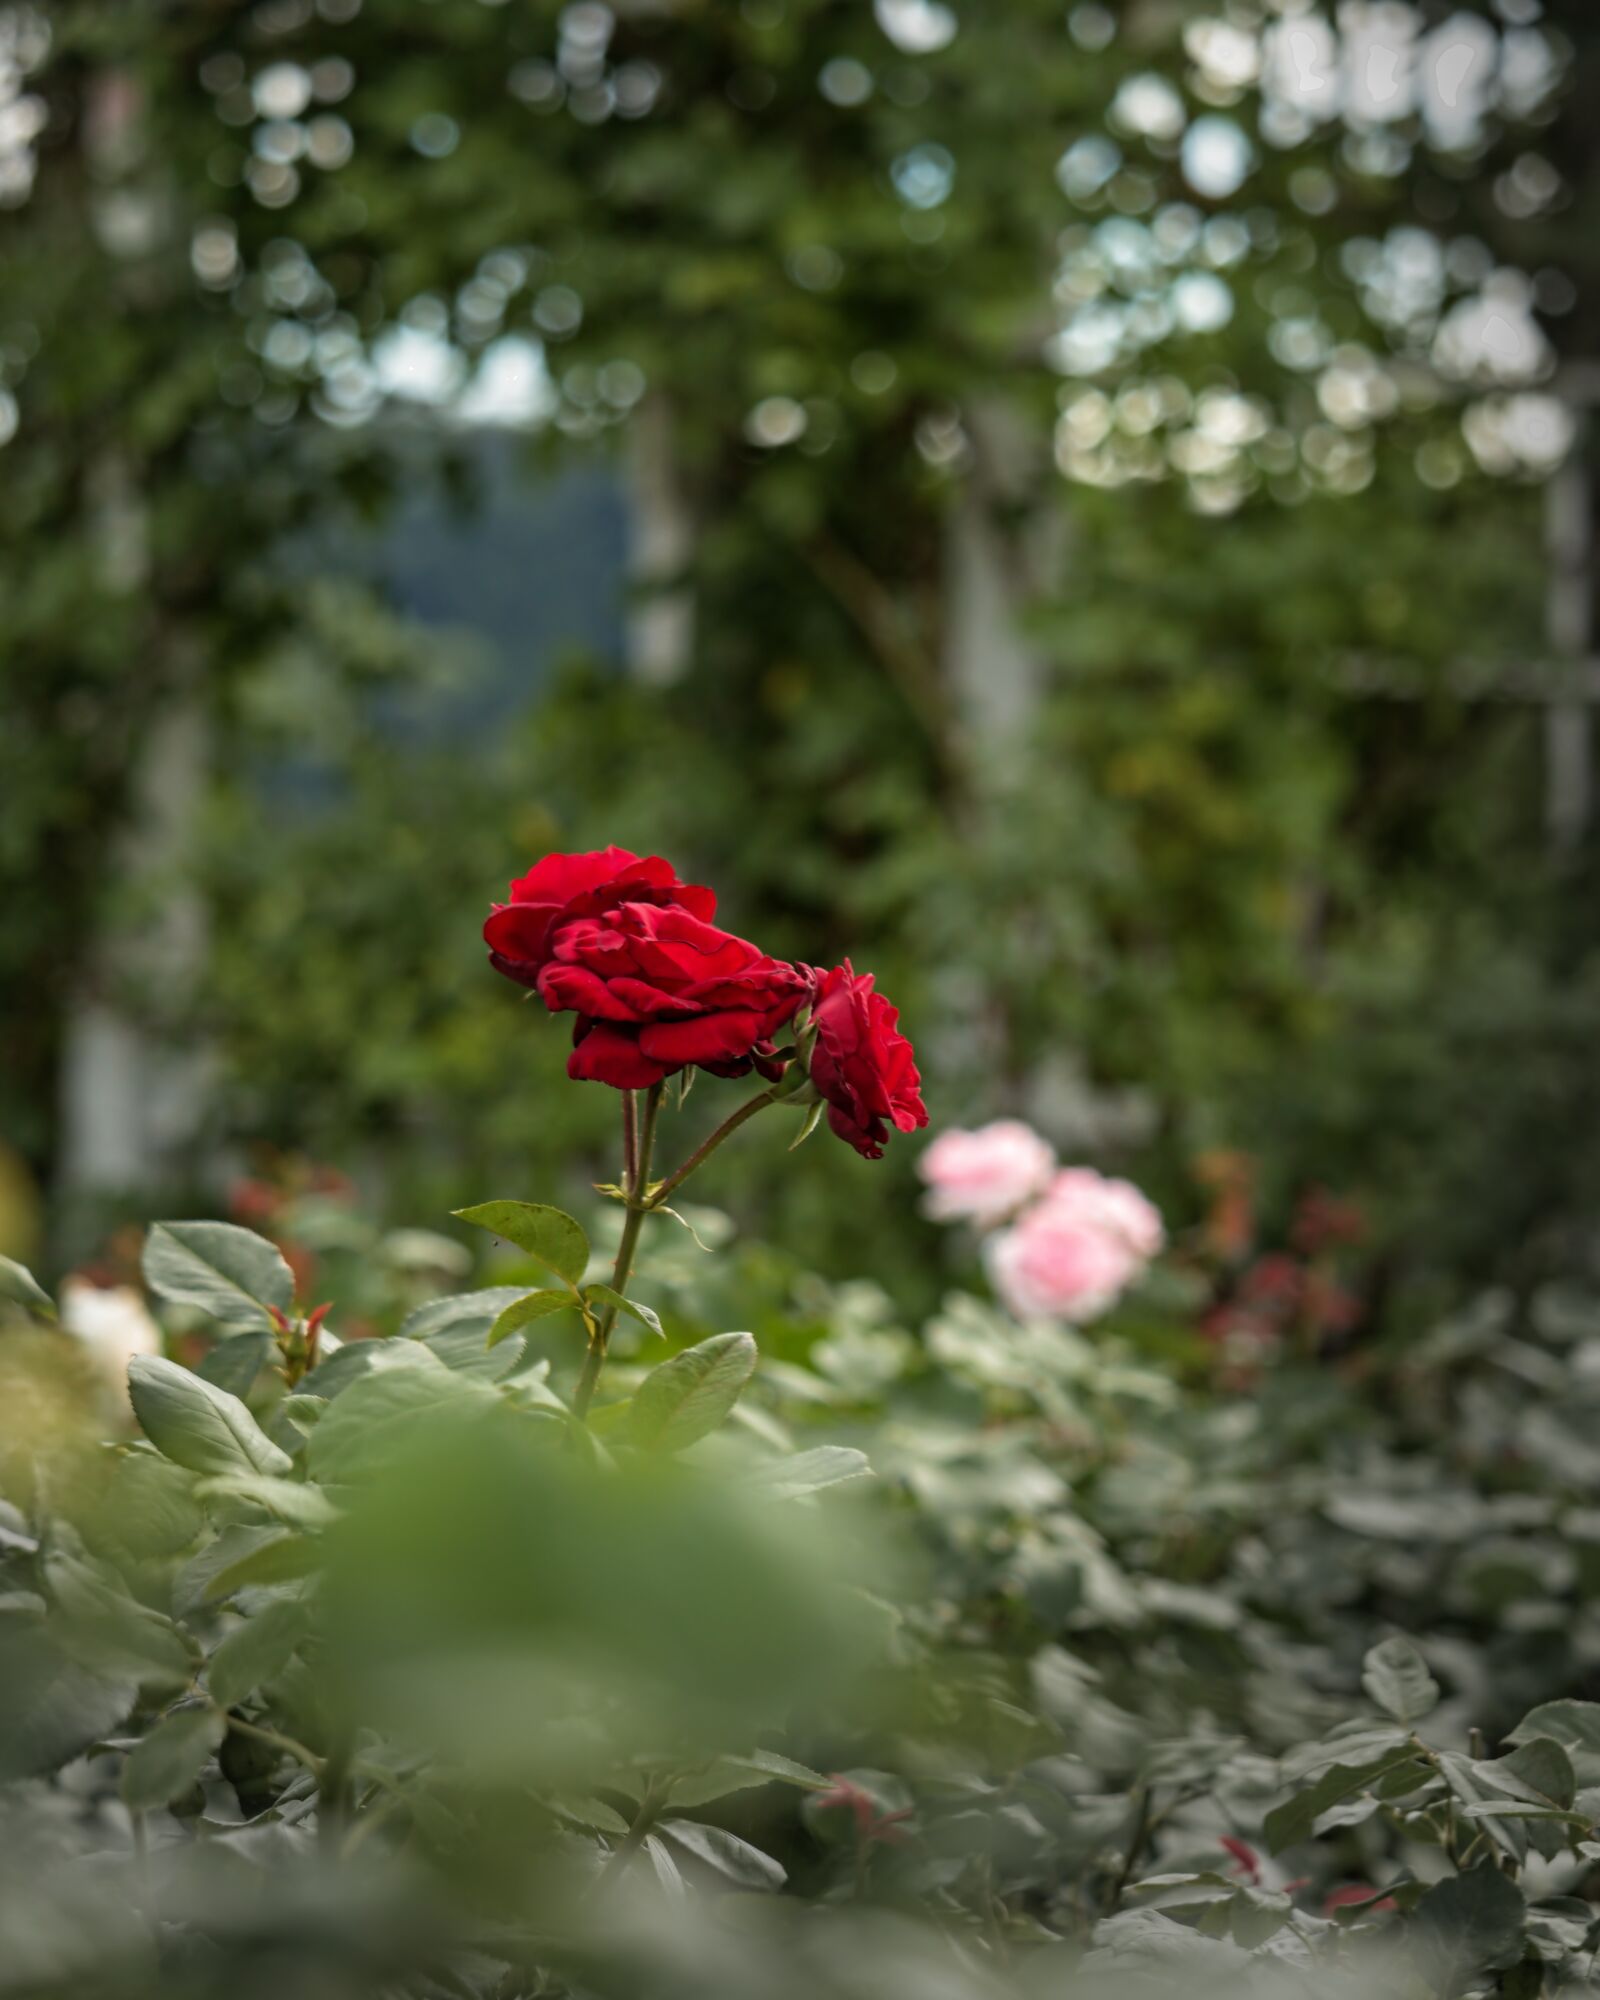 Canon EOS 200D (EOS Rebel SL2 / EOS Kiss X9) sample photo. "Rose, red, garden" photography